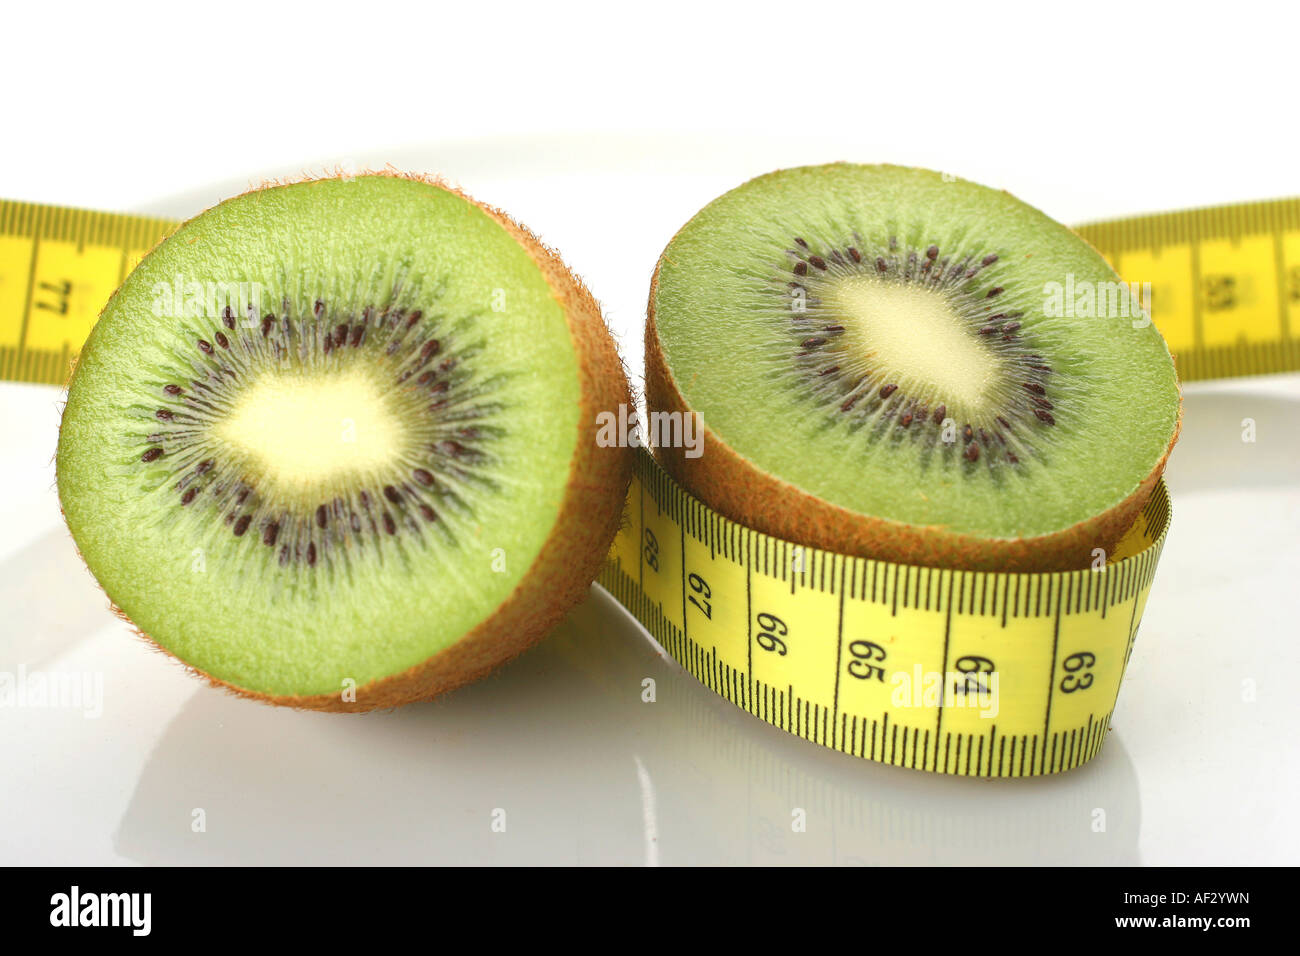 kiwi-diet Stock Photo